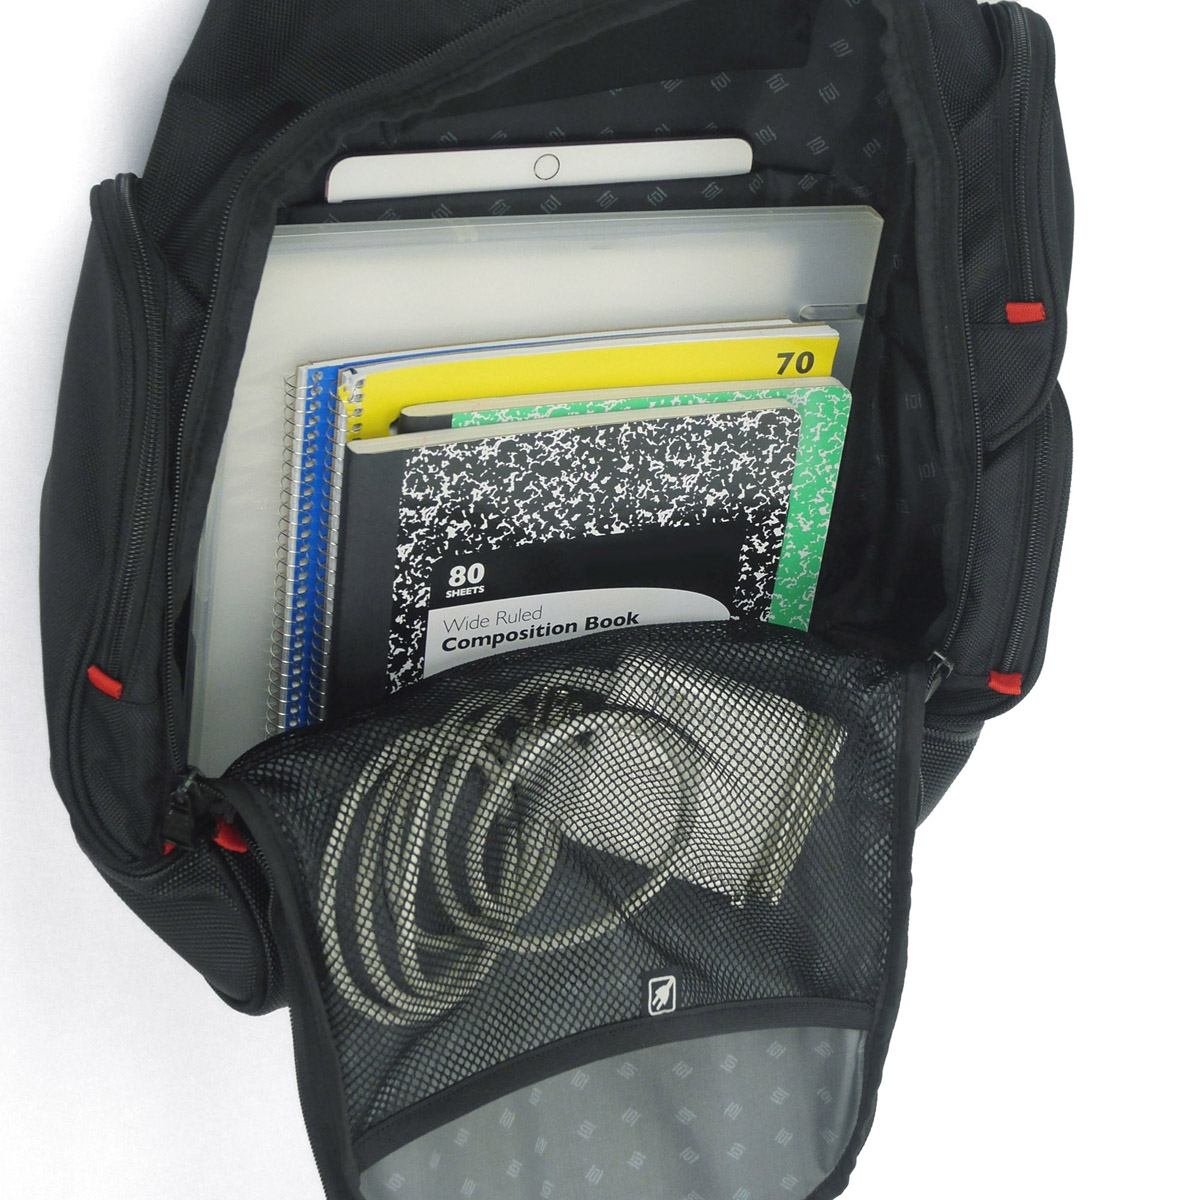 FUL Refugee Laptop Backpack